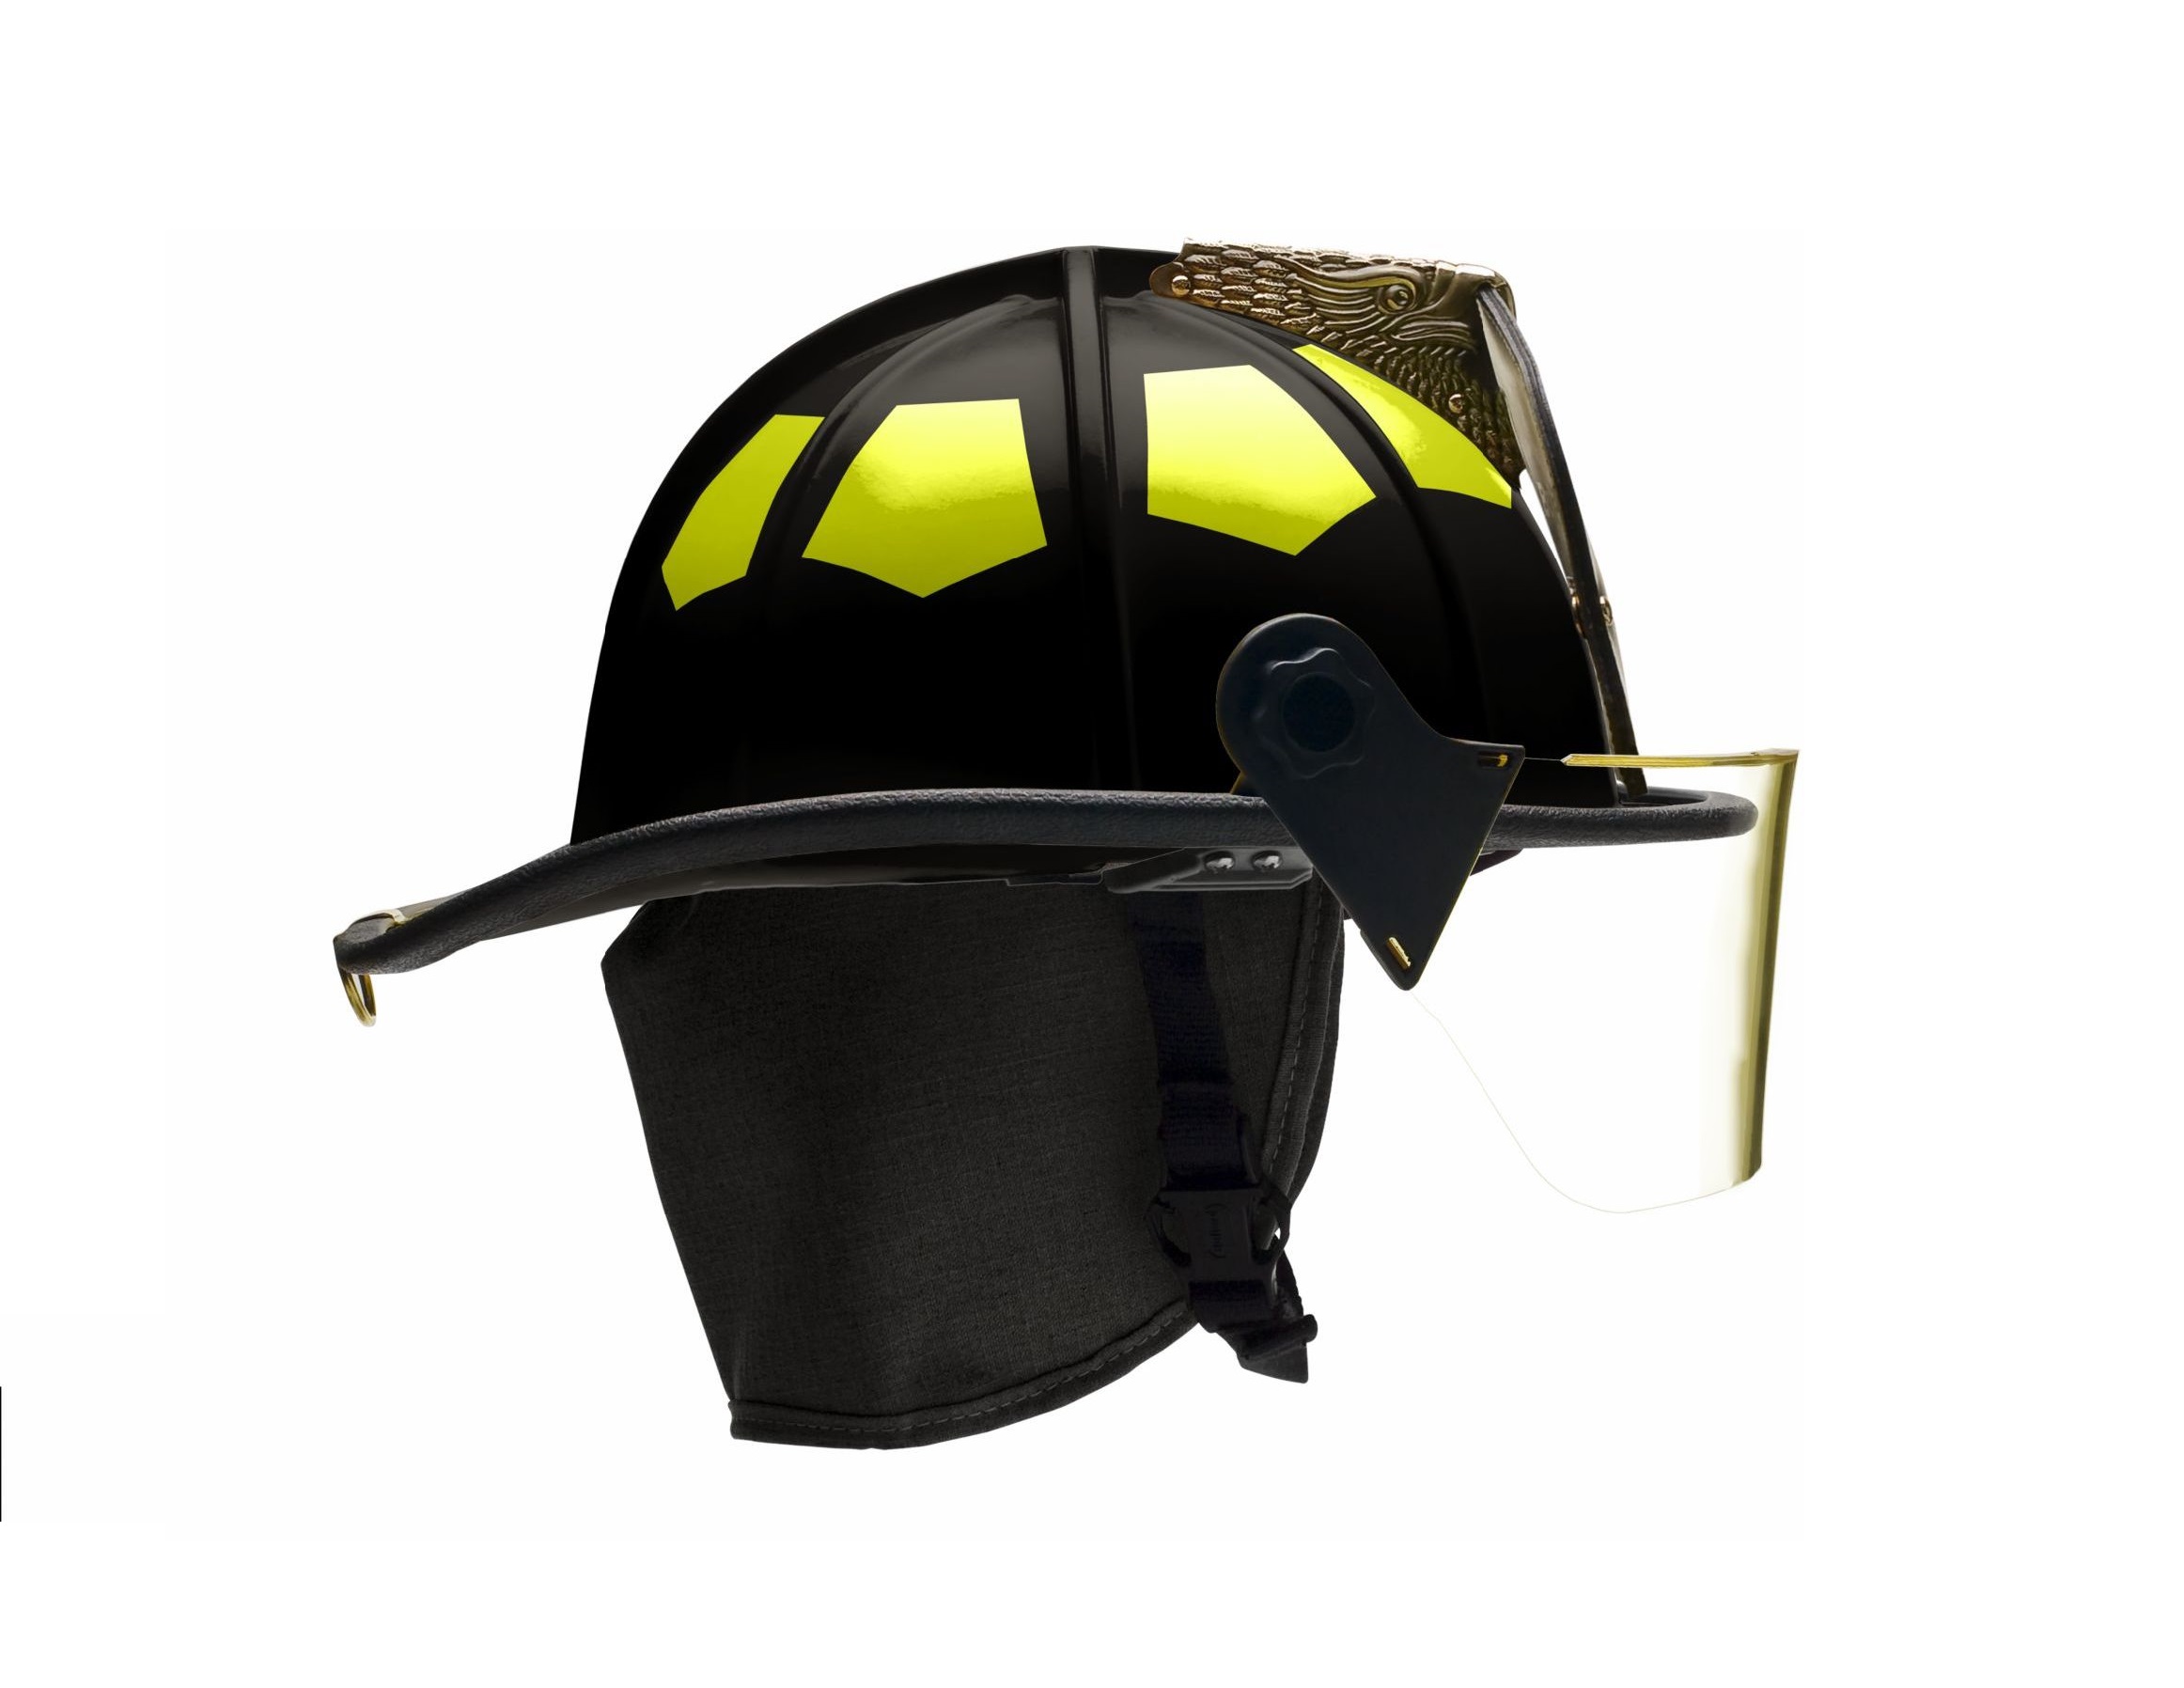 Casco de bomberos para bomberos (plástico), diseño de casco de plástico